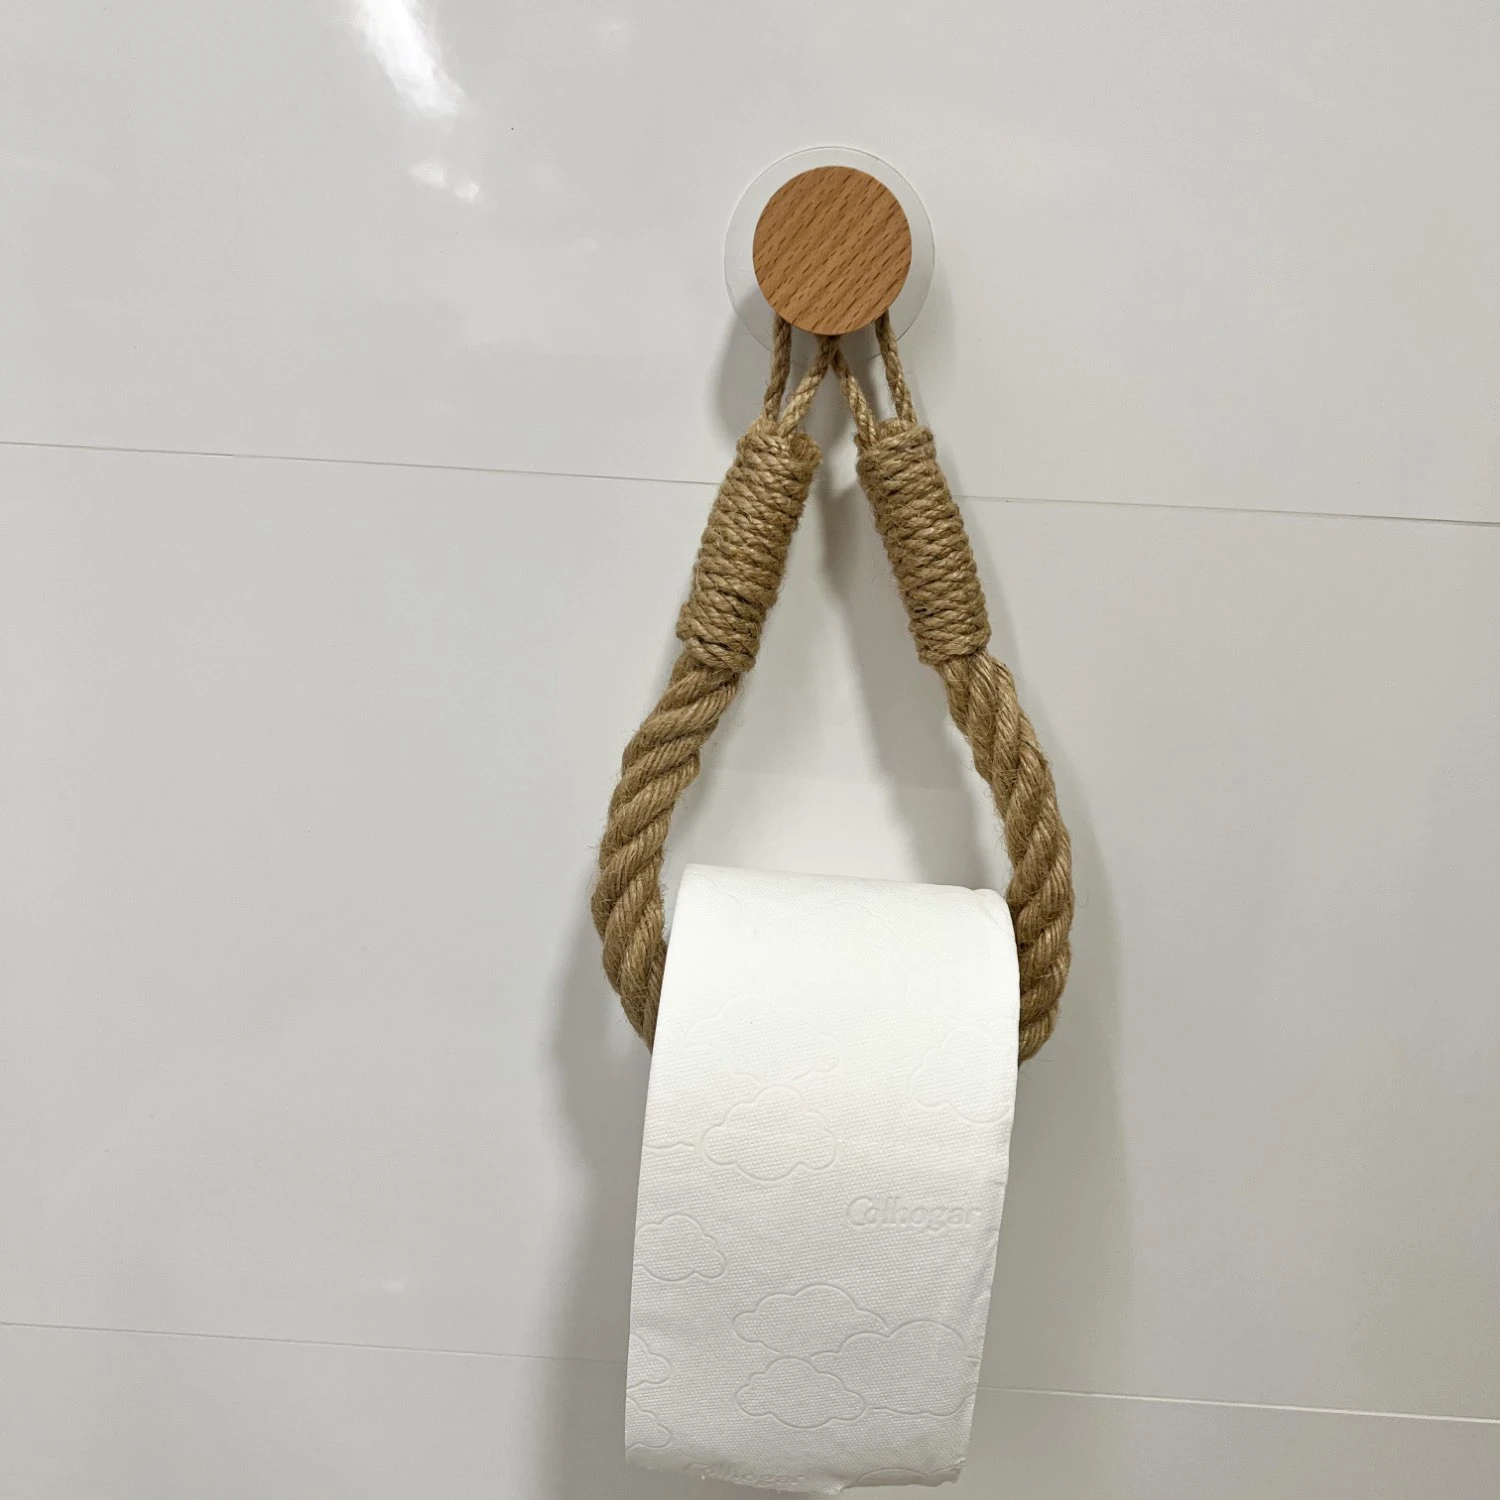 Circular Square Paper Holders Bathroom Towel Rack Toilet Paper Holder Towel Rack Beige Hemp Color